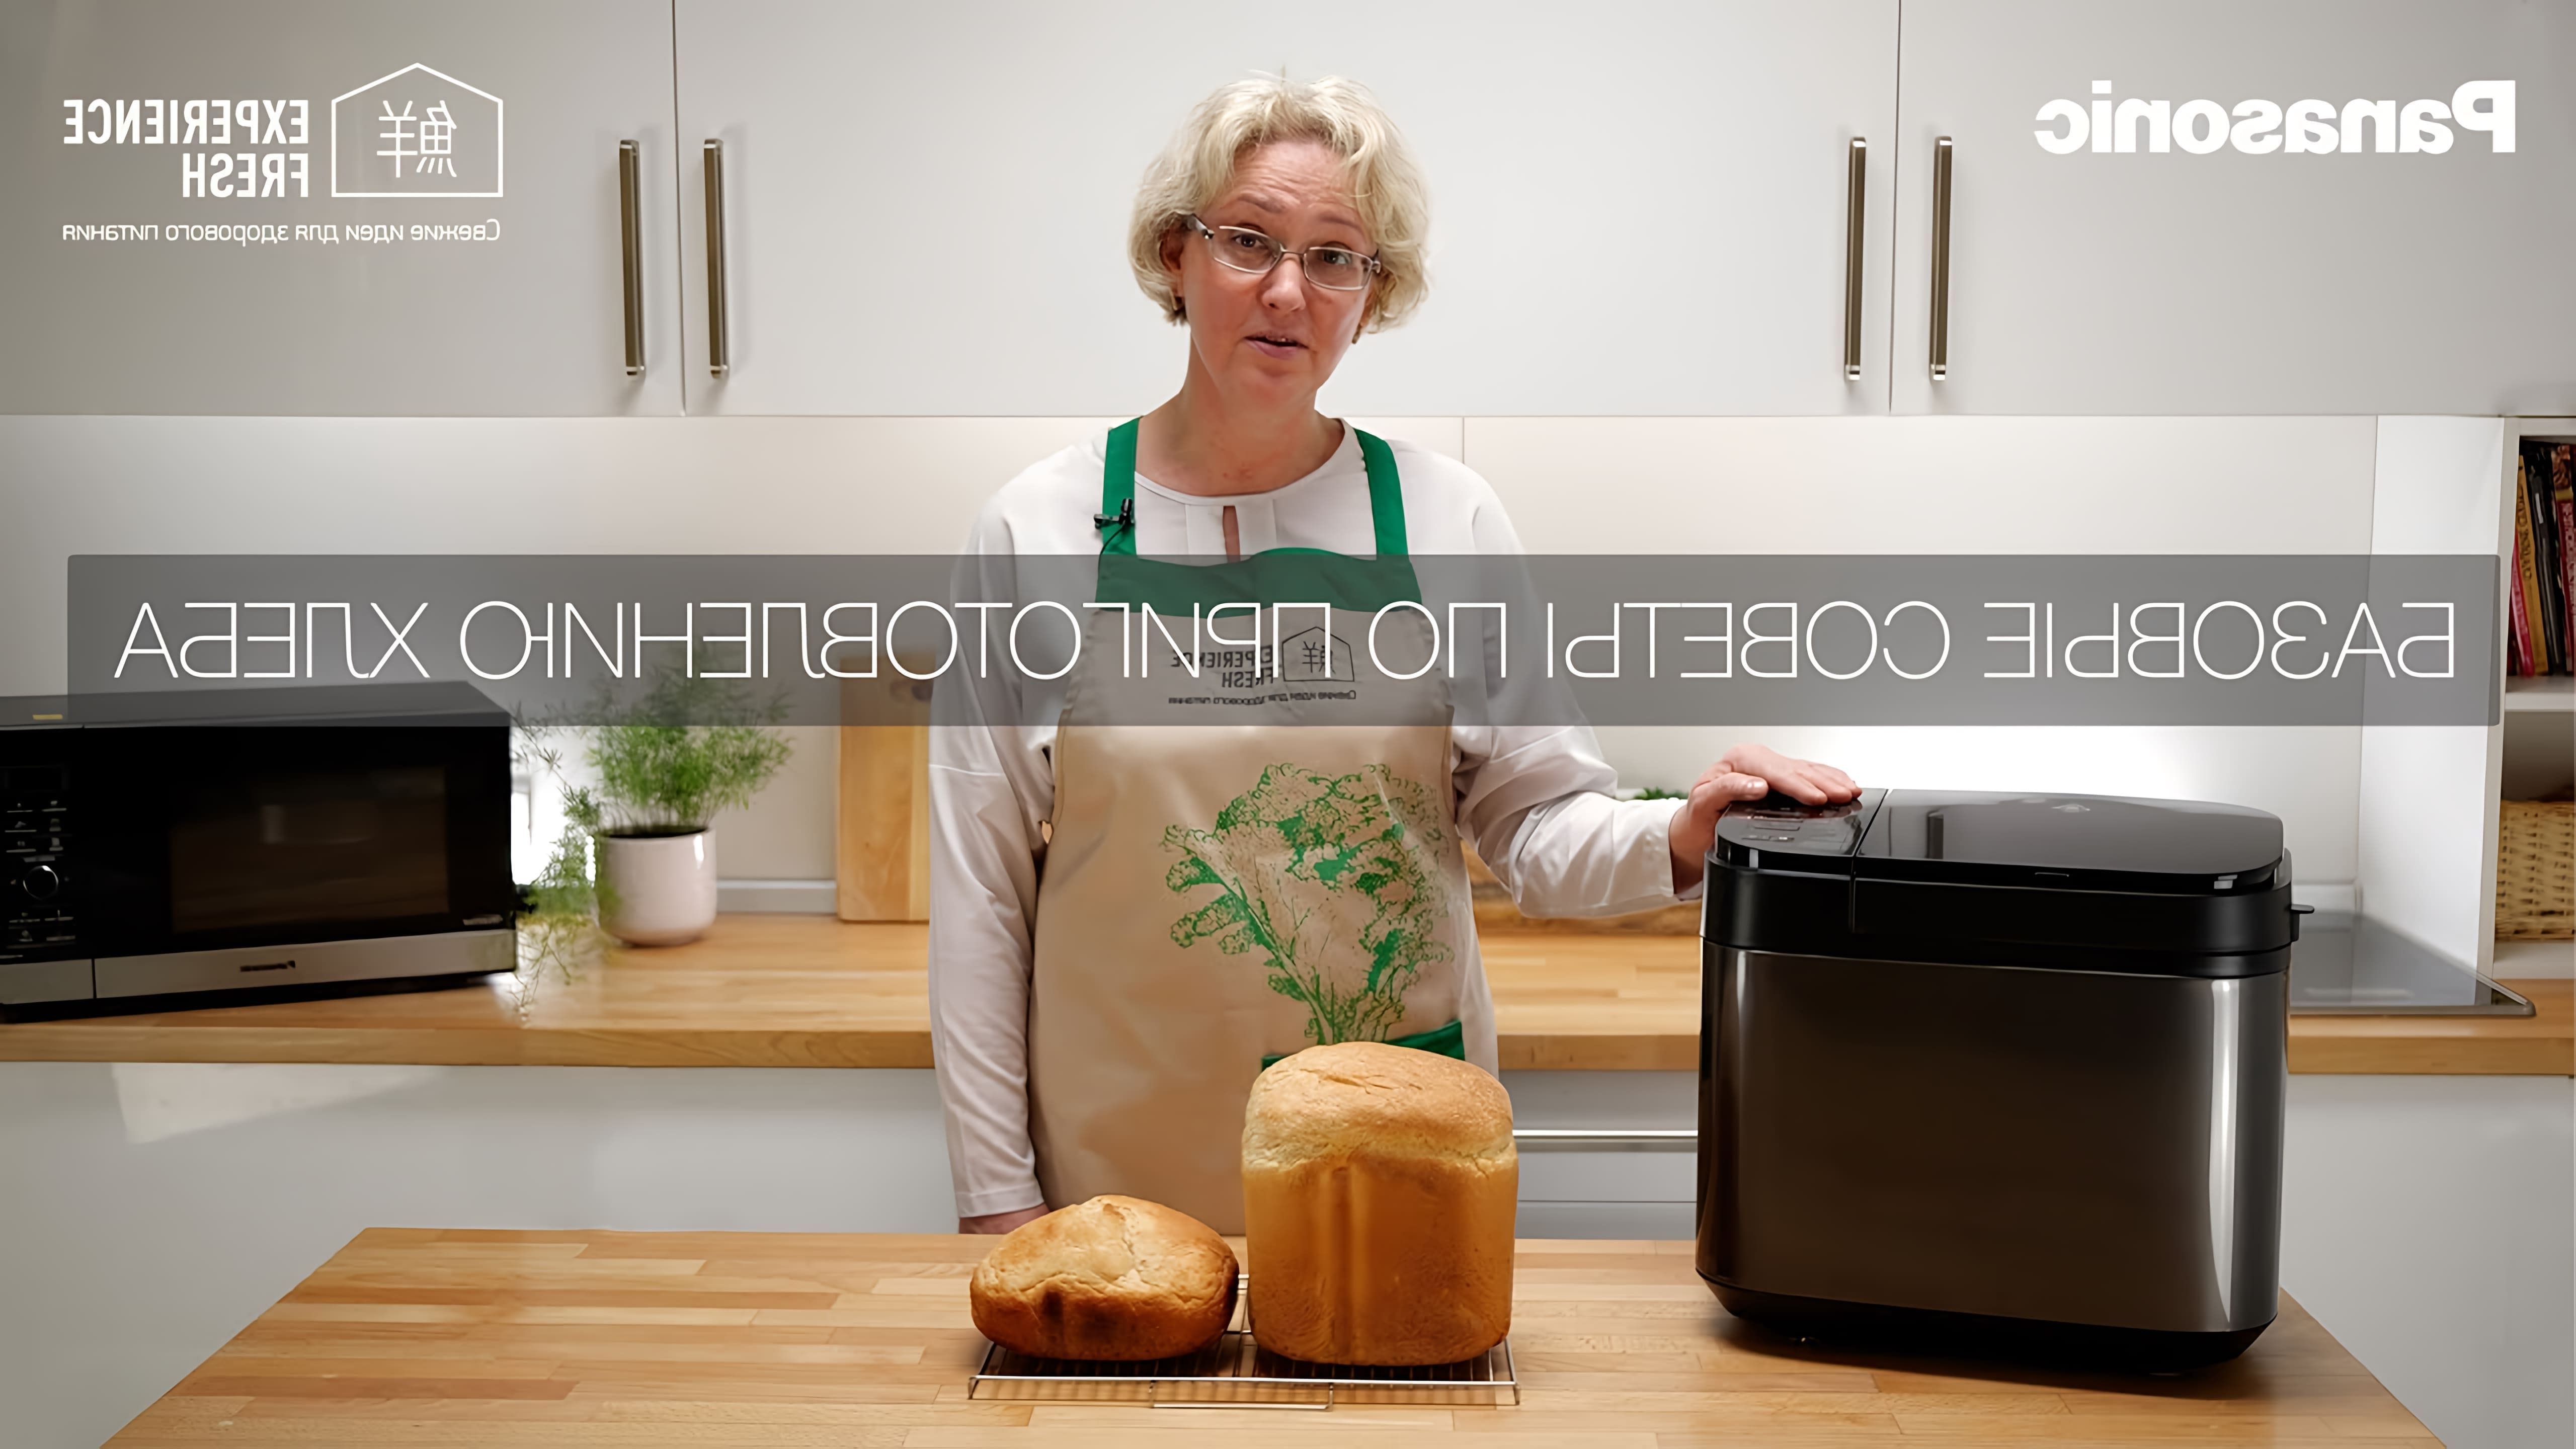 В этом видео рассказываются базовые советы по приготовлению домашнего хлеба с использованием хлебопечки Panasonic